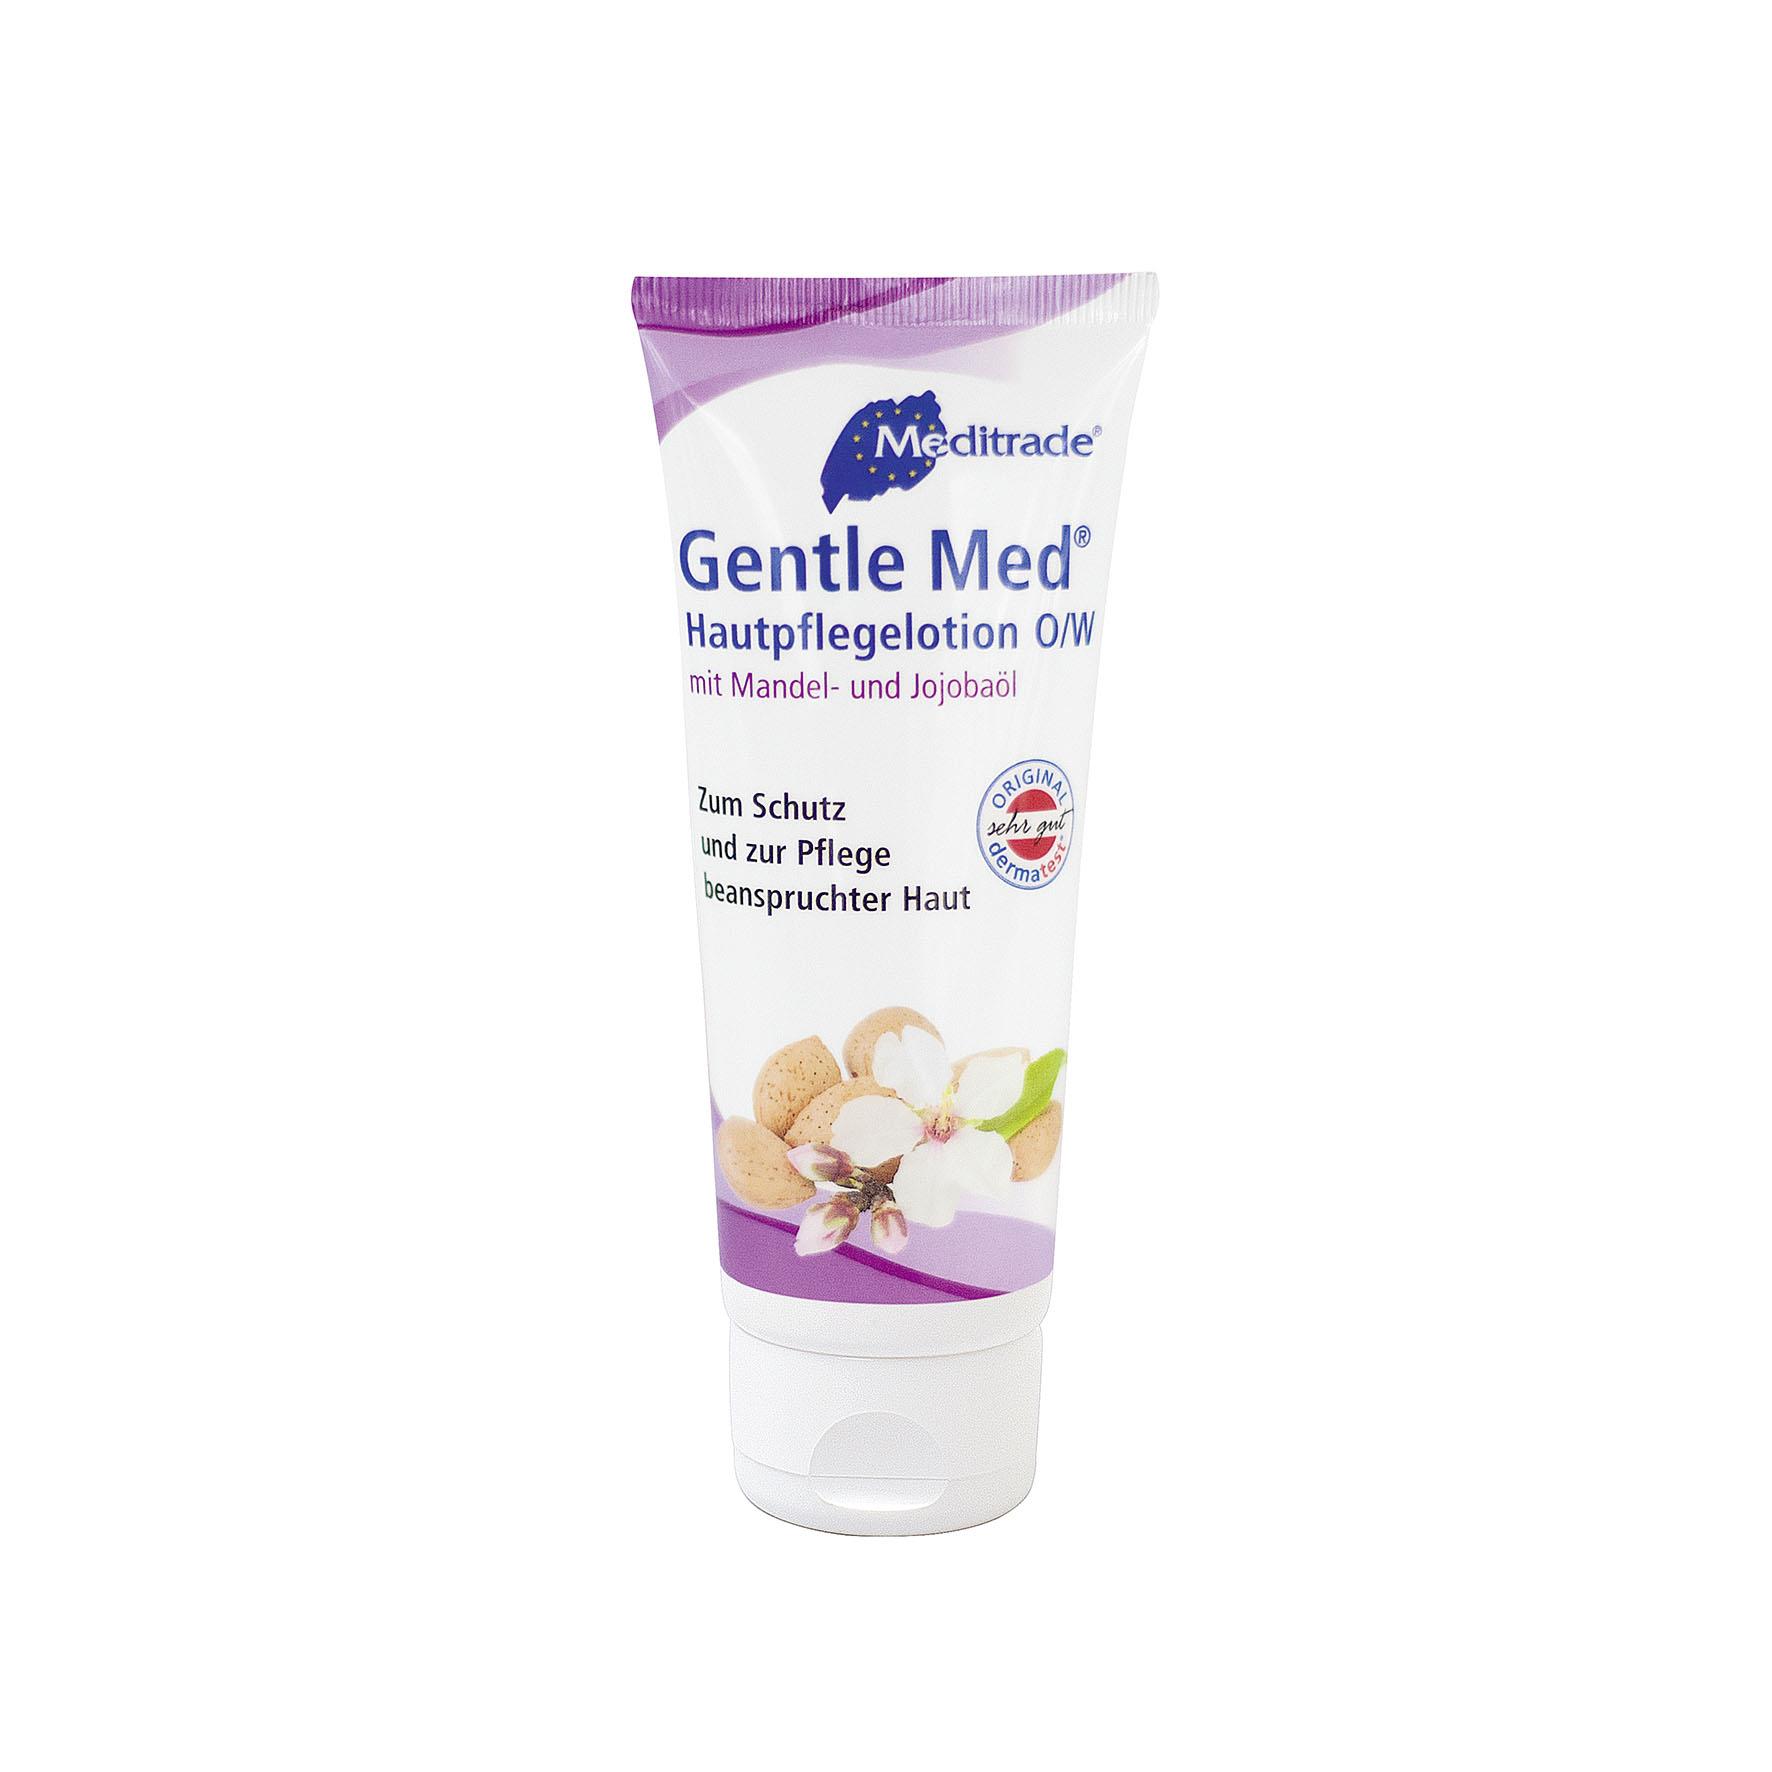 Gentle Med Hautpflegelotion O/W 100 ml